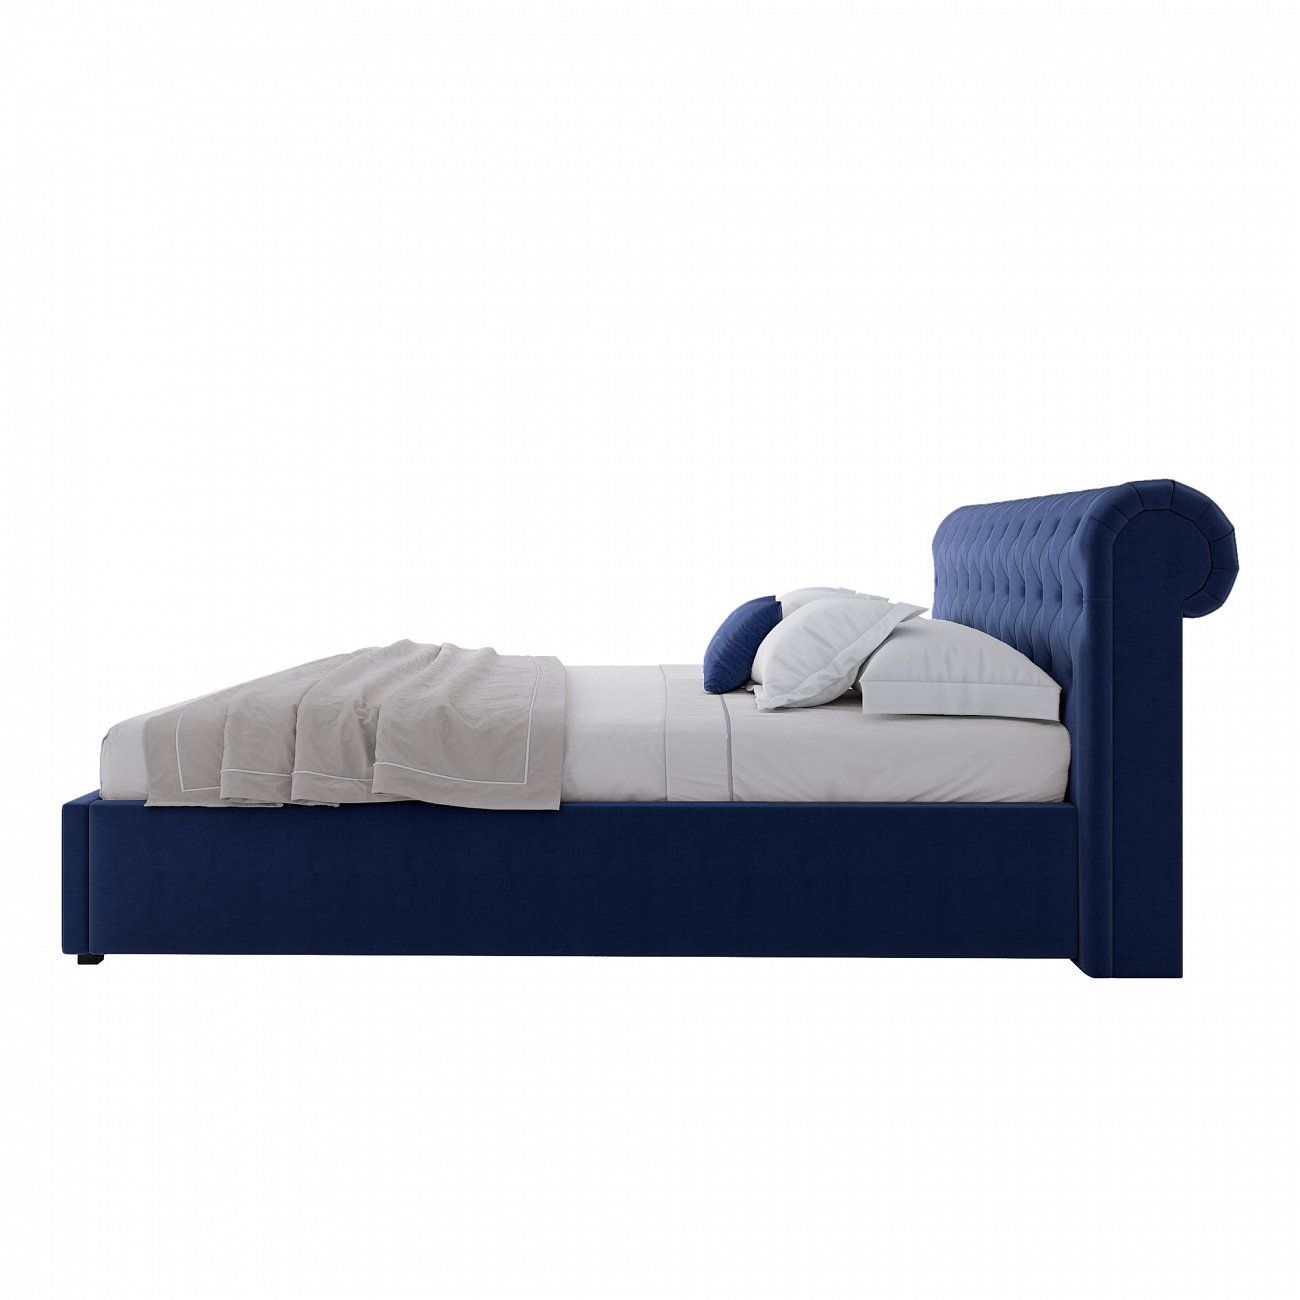 Кровать двуспальная с мягким изголовьем 160х200 см синяя Sweet Dreams